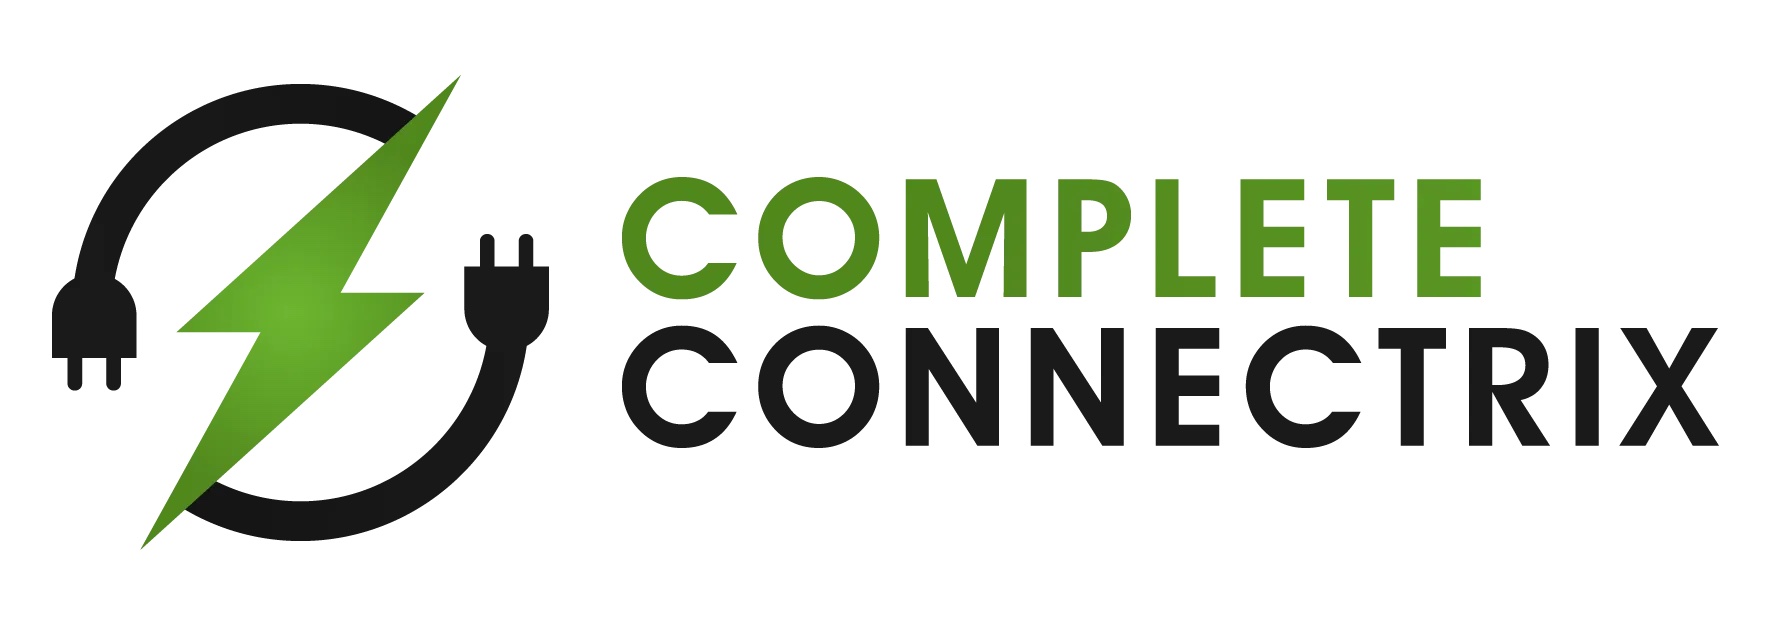 Complete Connectrix Ltd